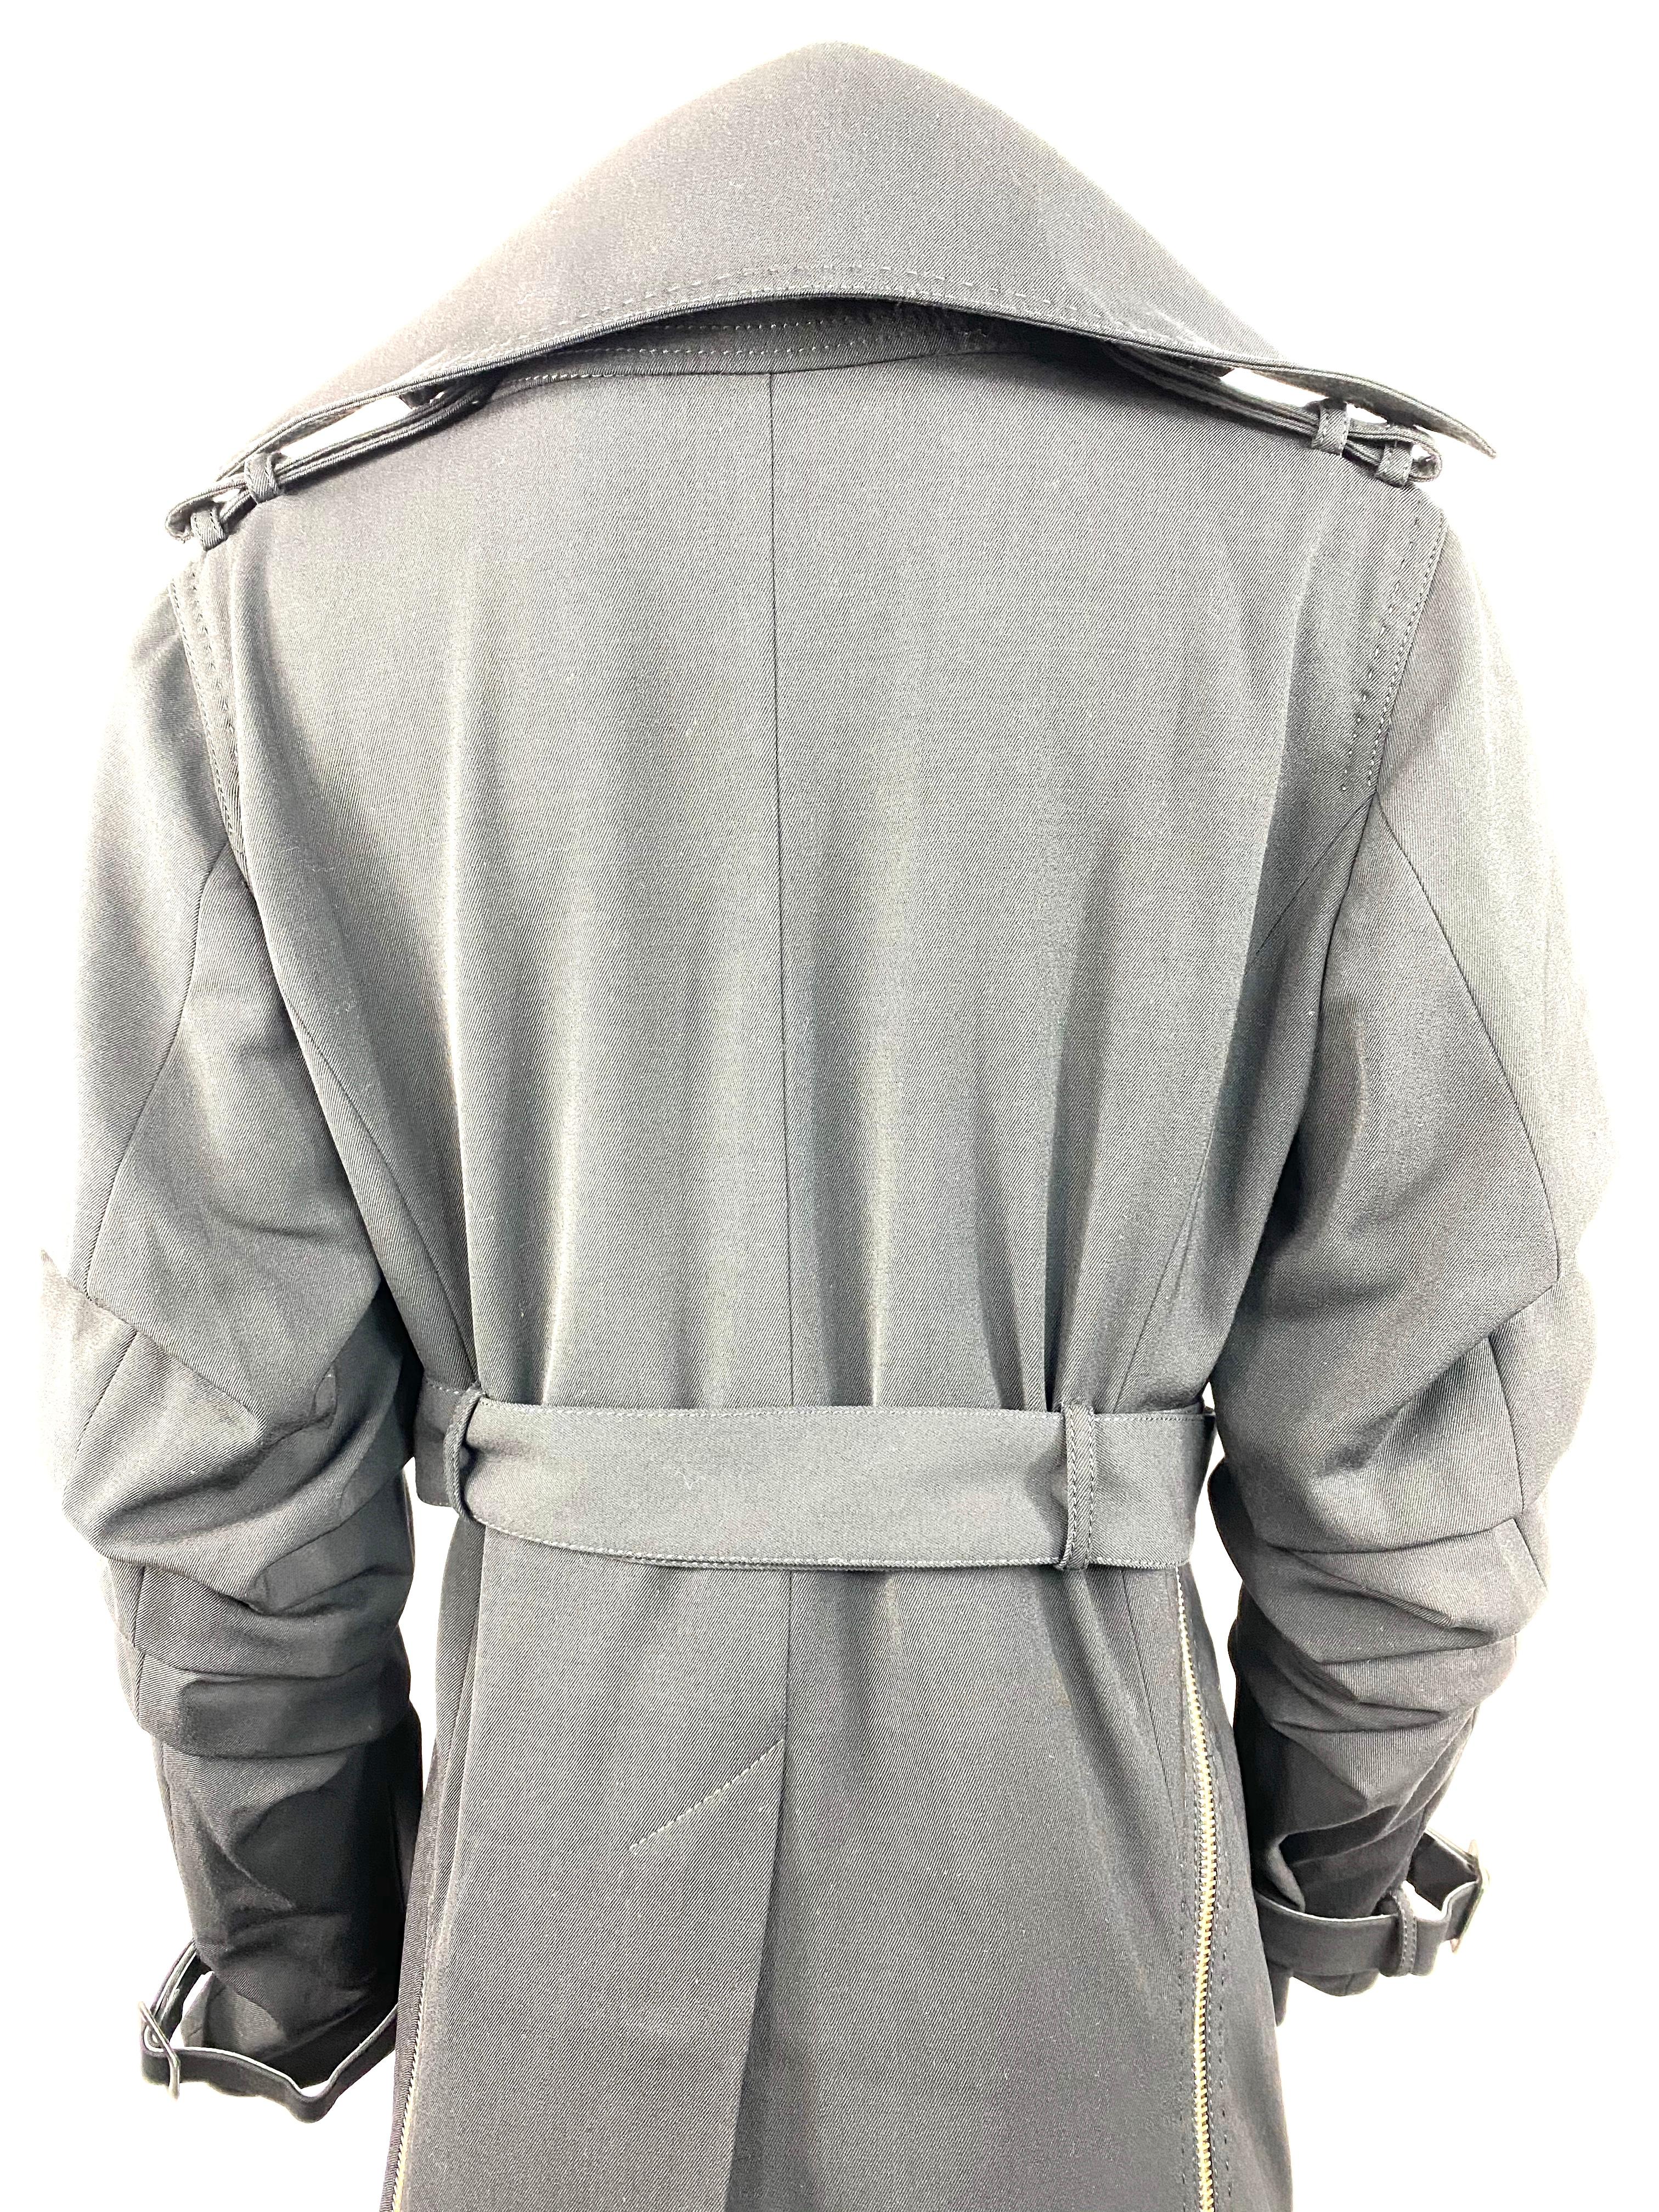 Gianfranco Ferre Black Wool Long Coat Jacket w/ Belt Size 44 For Sale 4